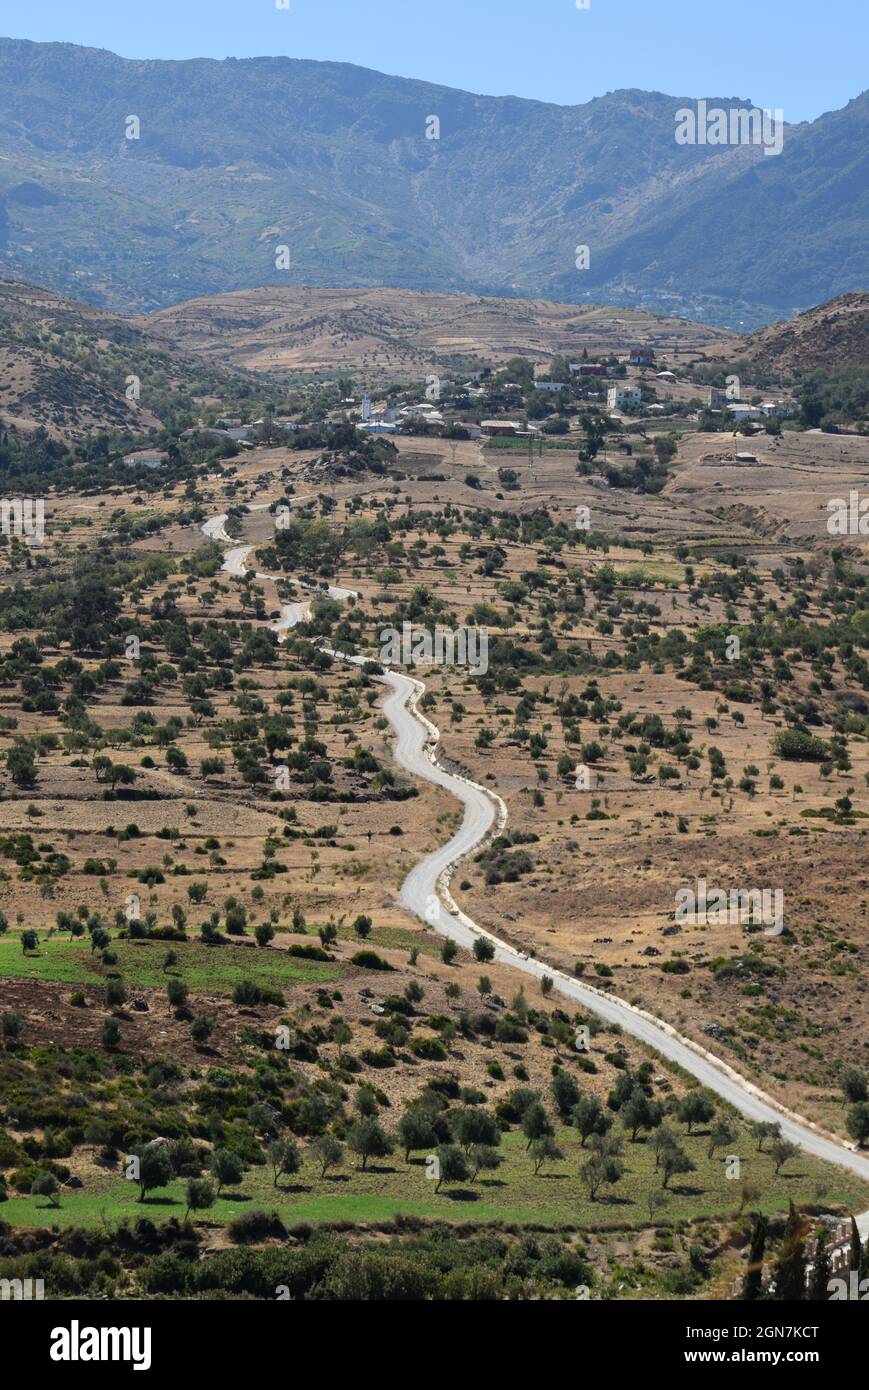 Dorf in einem trockenen Berggebiet des Rif, in der Nähe von Chefchaouen und Oued Laou Dam, Marokko Stockfoto